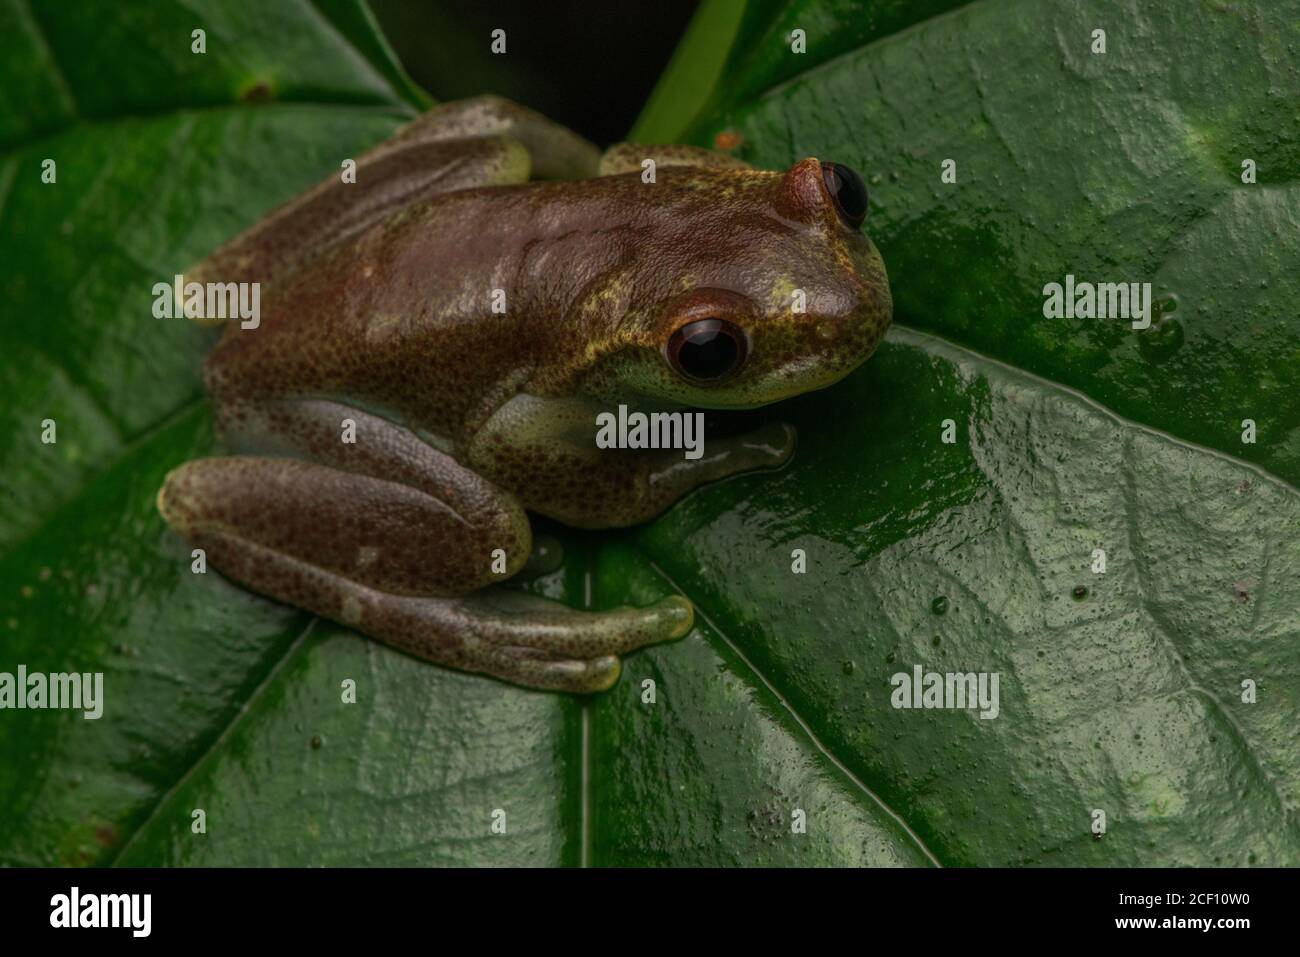 Der plätschernde Torrenteerfrosch (Hyloscirtus alytolylax) ist eine Art von Baumfrosch aus der Choco-Region Ecuadors. Stockfoto